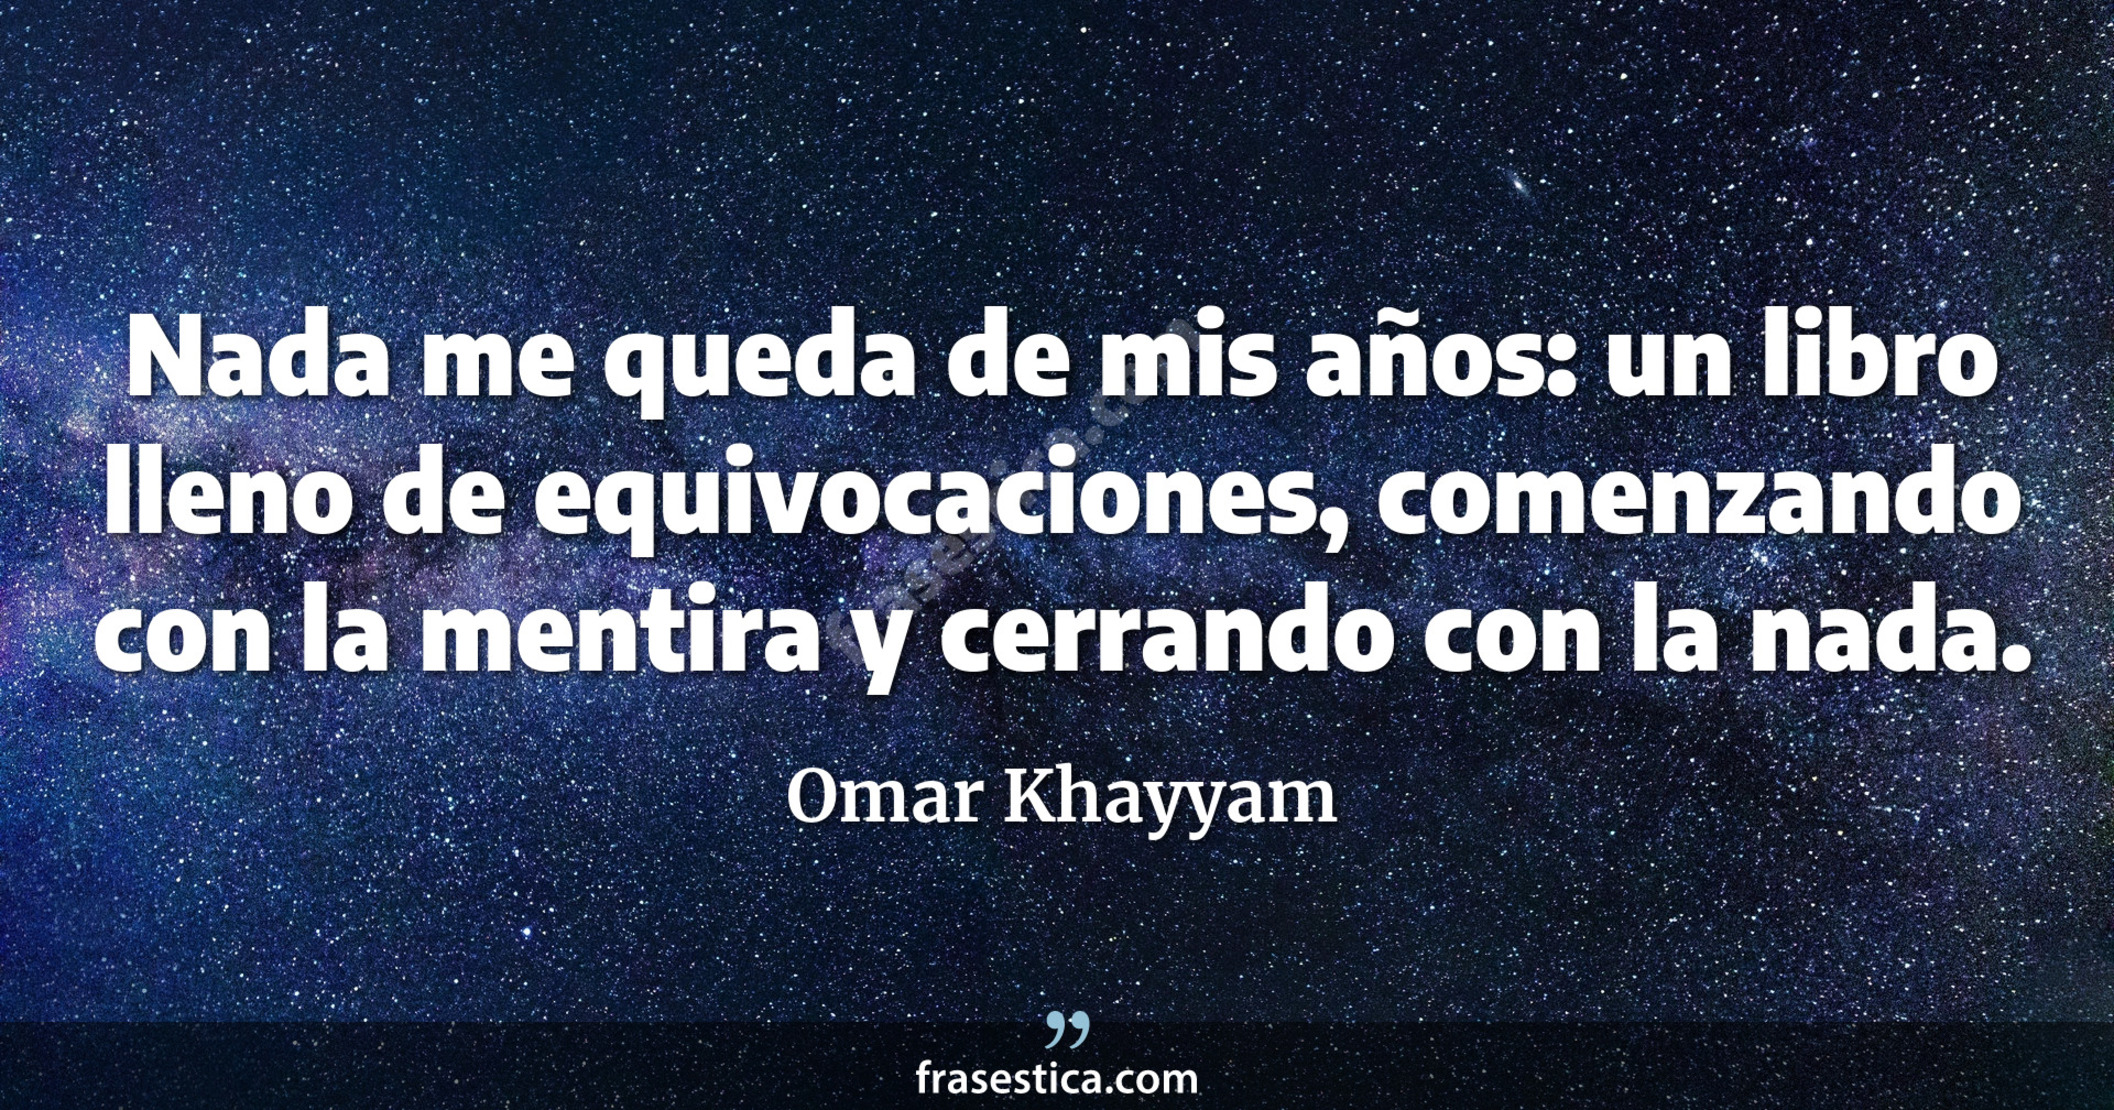 Nada me queda de mis años: un libro lleno de equivocaciones, comenzando con la mentira y cerrando con la nada. - Omar Khayyam